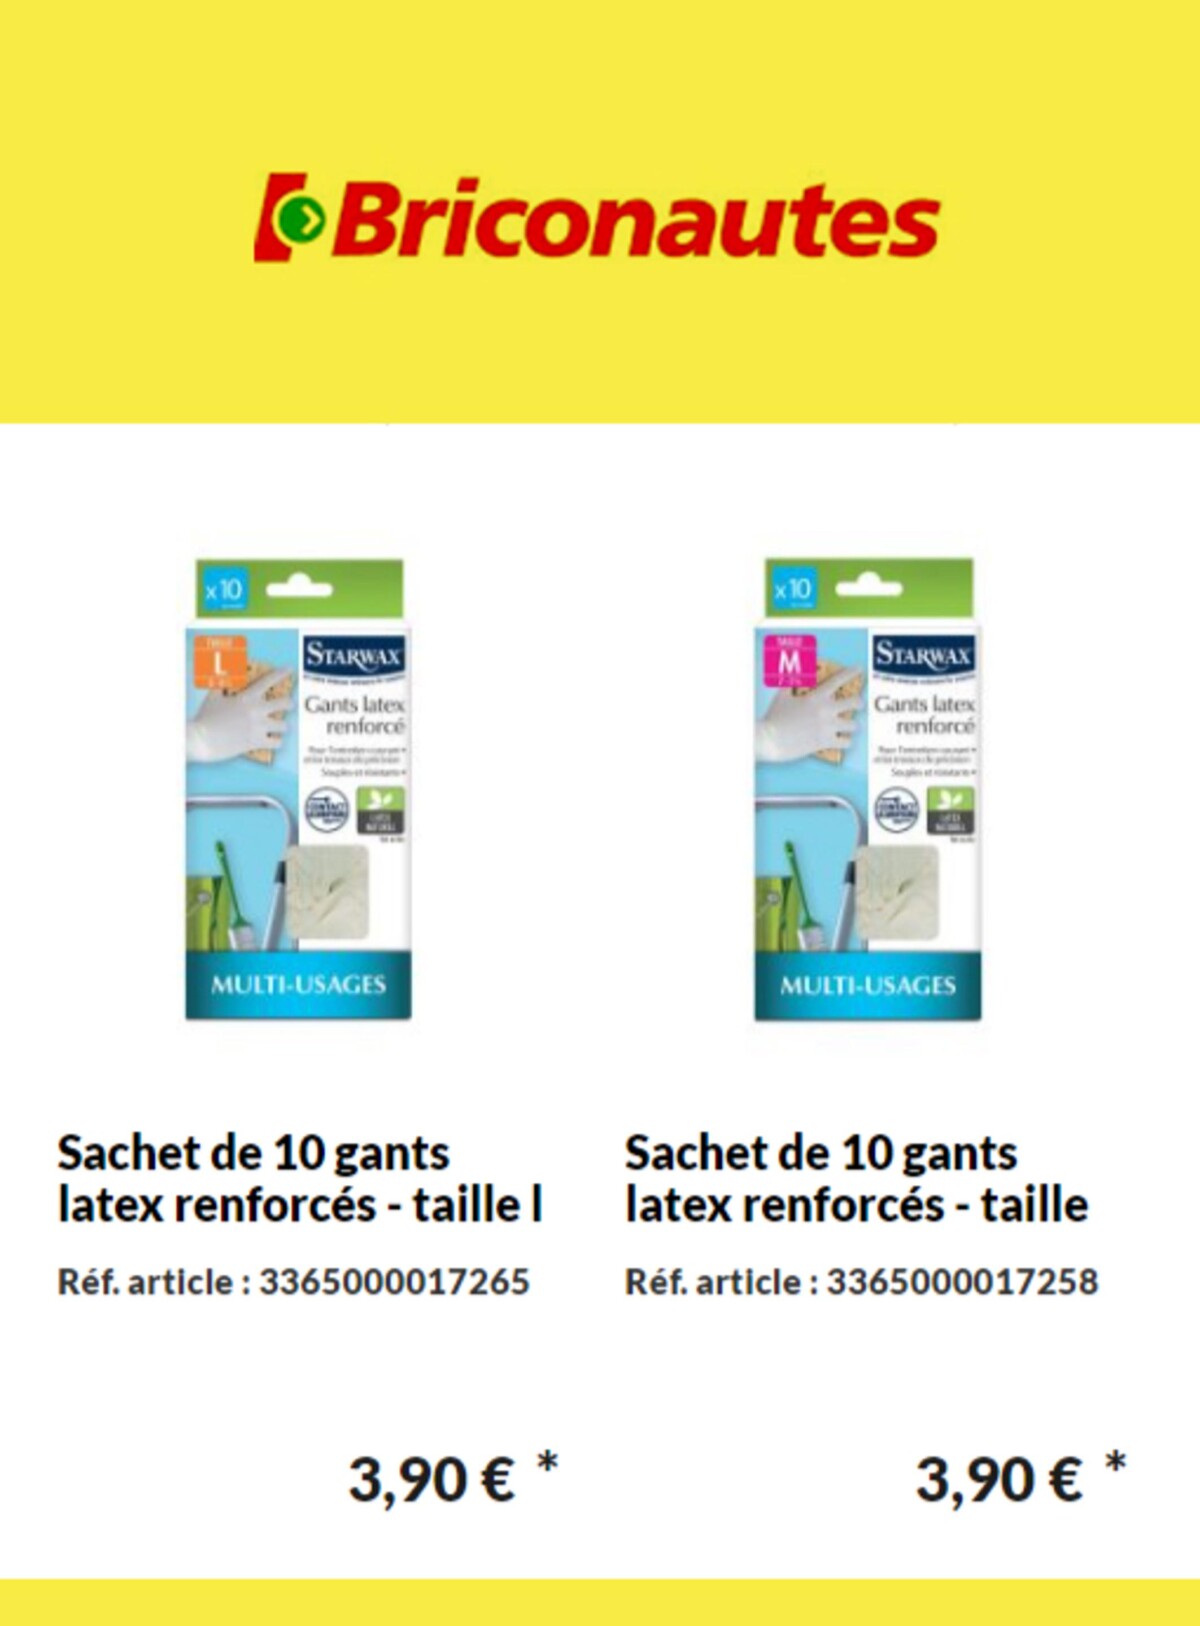 Catalogue Nouveaux produits Les Briconautes, page 00004